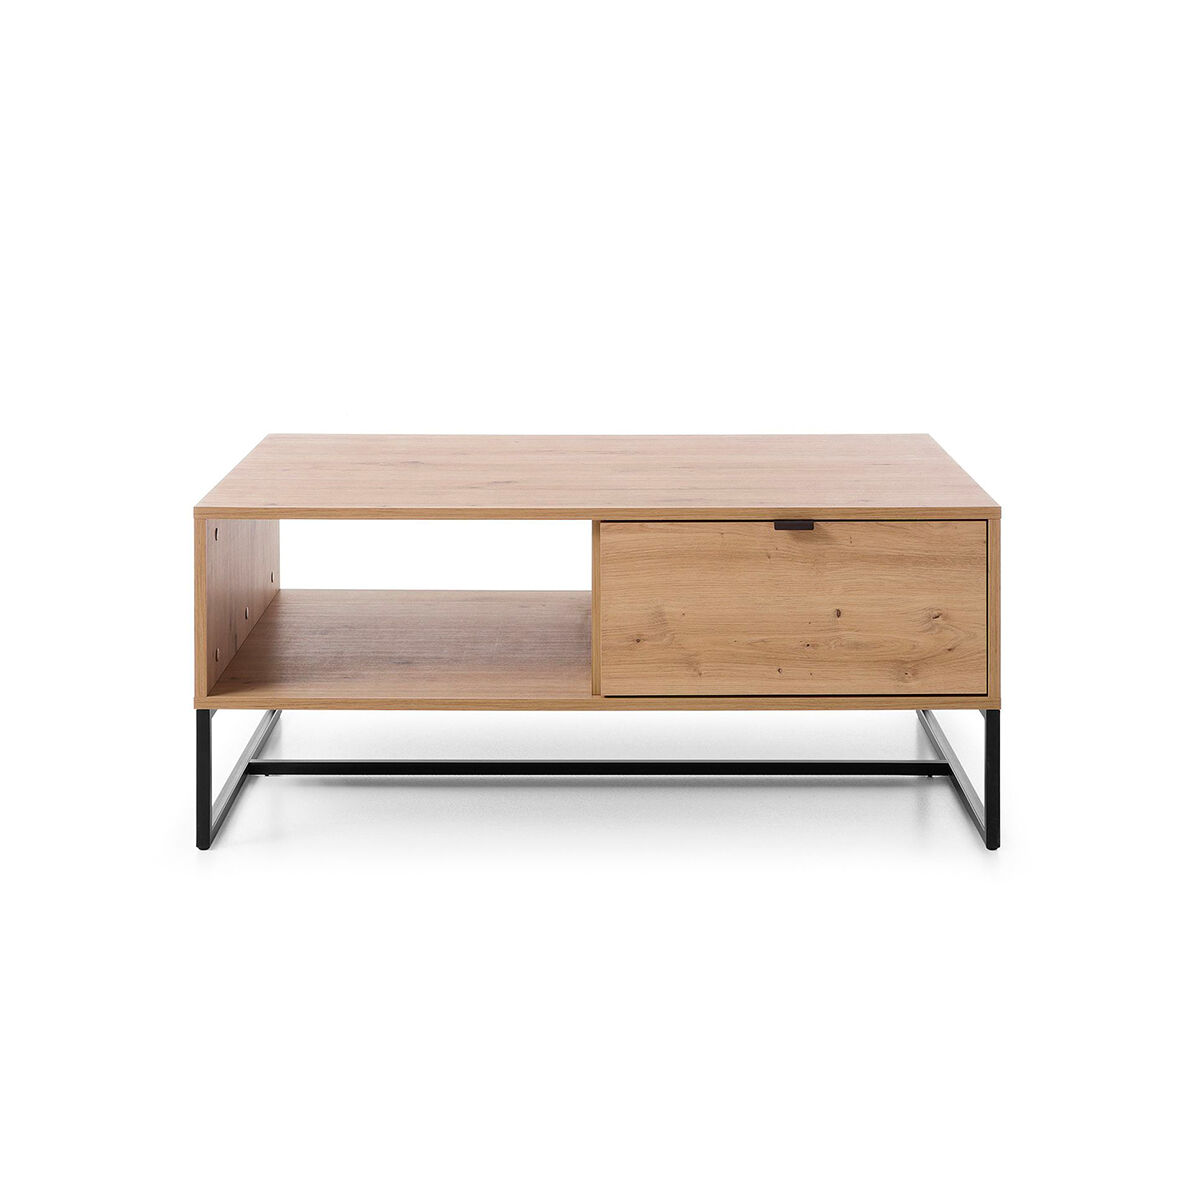 Petits meubles Table basse 1 tiroir naturelle et métal Beige 104x44x68cm